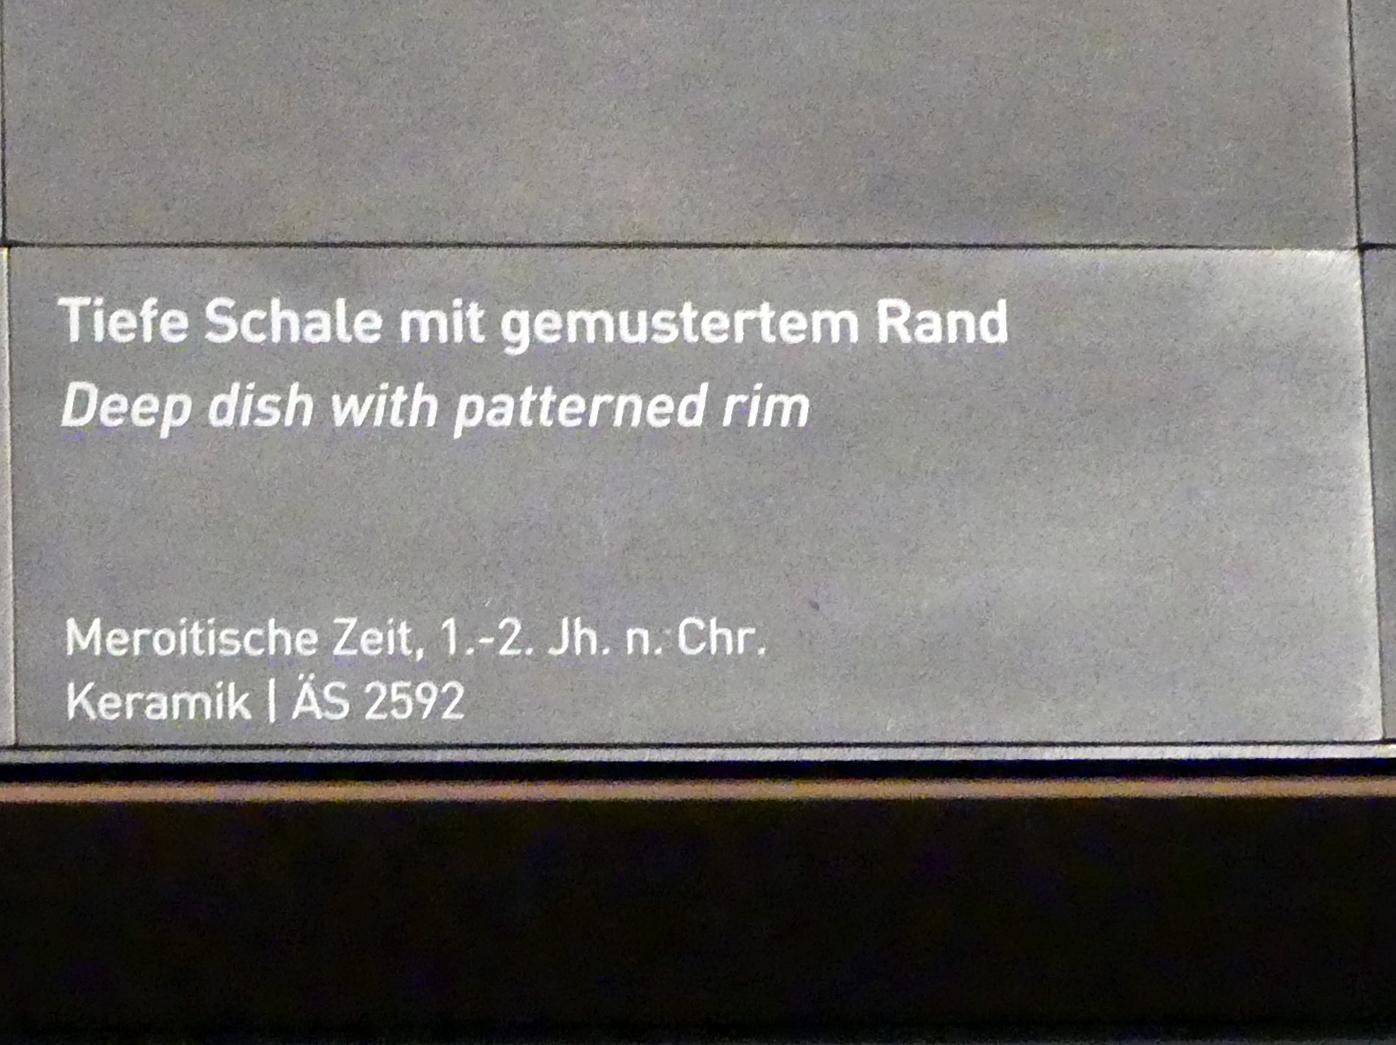 Tiefe Schale mit gemustertem Rand, Meroitische Zeit, 200 v. Chr. - 500 n. Chr., 1 - 200, Bild 2/2